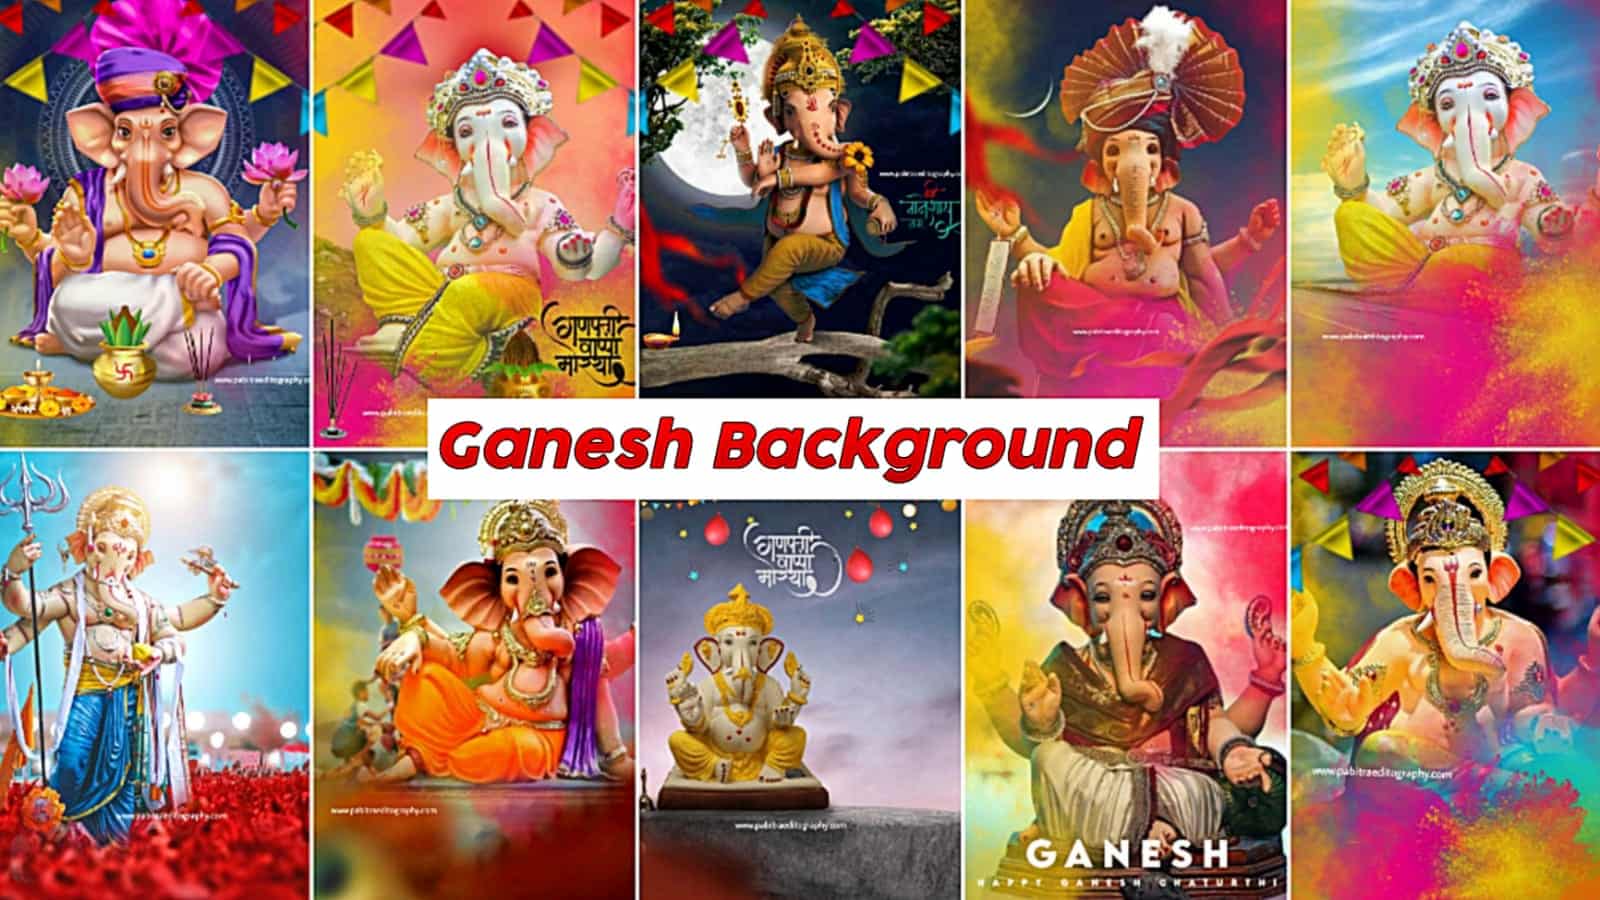 Ganesh Chaturthi Photo Editing Background Online Free - PABITRA EDITOGRAPHY  